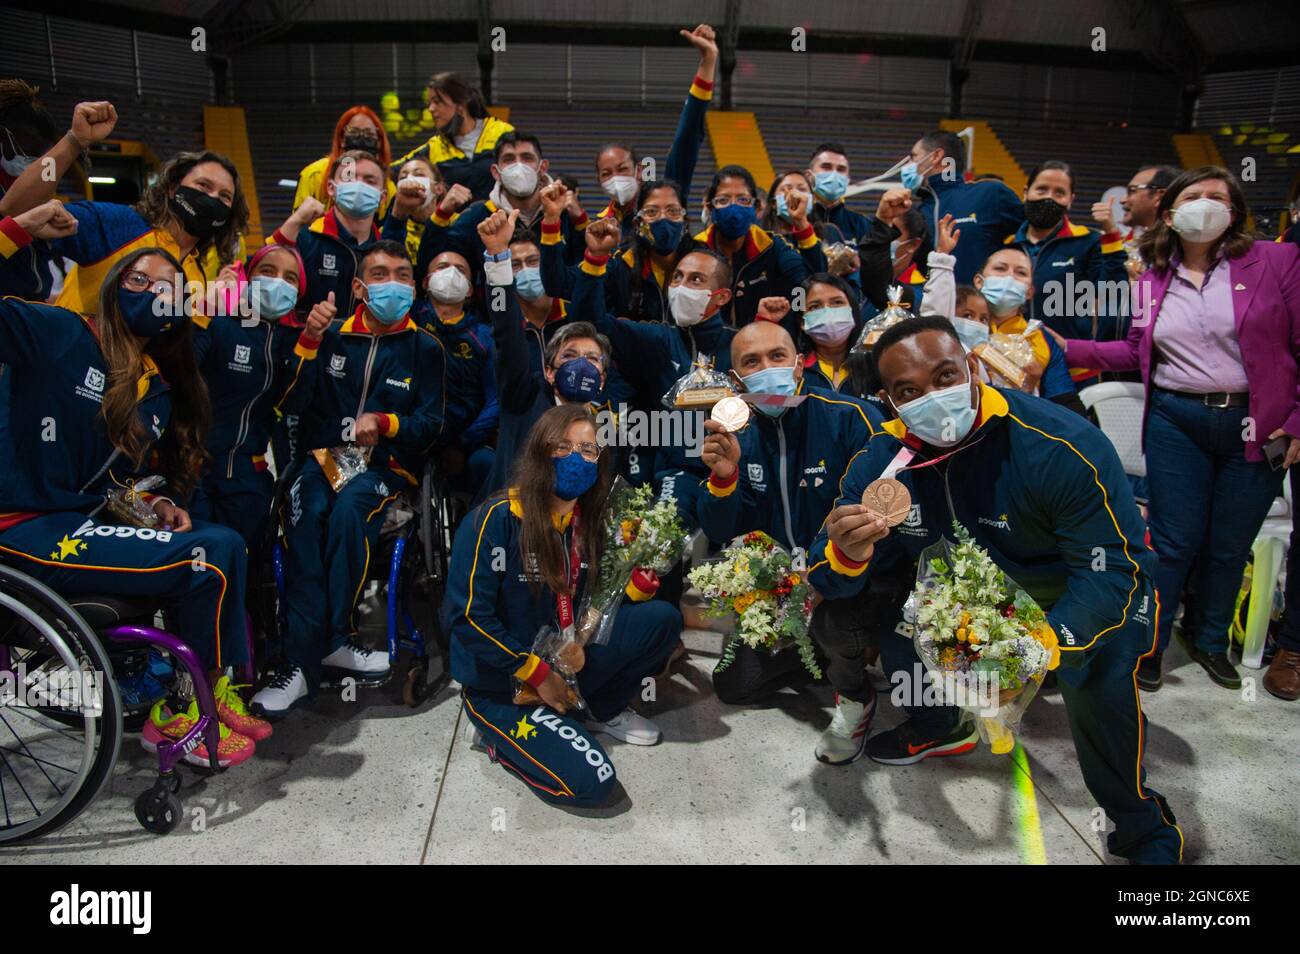 Gli atleti Paralimpici posano per una foto durante un evento di benvenuto agli atleti Paralimpici colombiani che hanno partecipato alla Paralimpica di Tokyo 2020+1, in Foto Stock